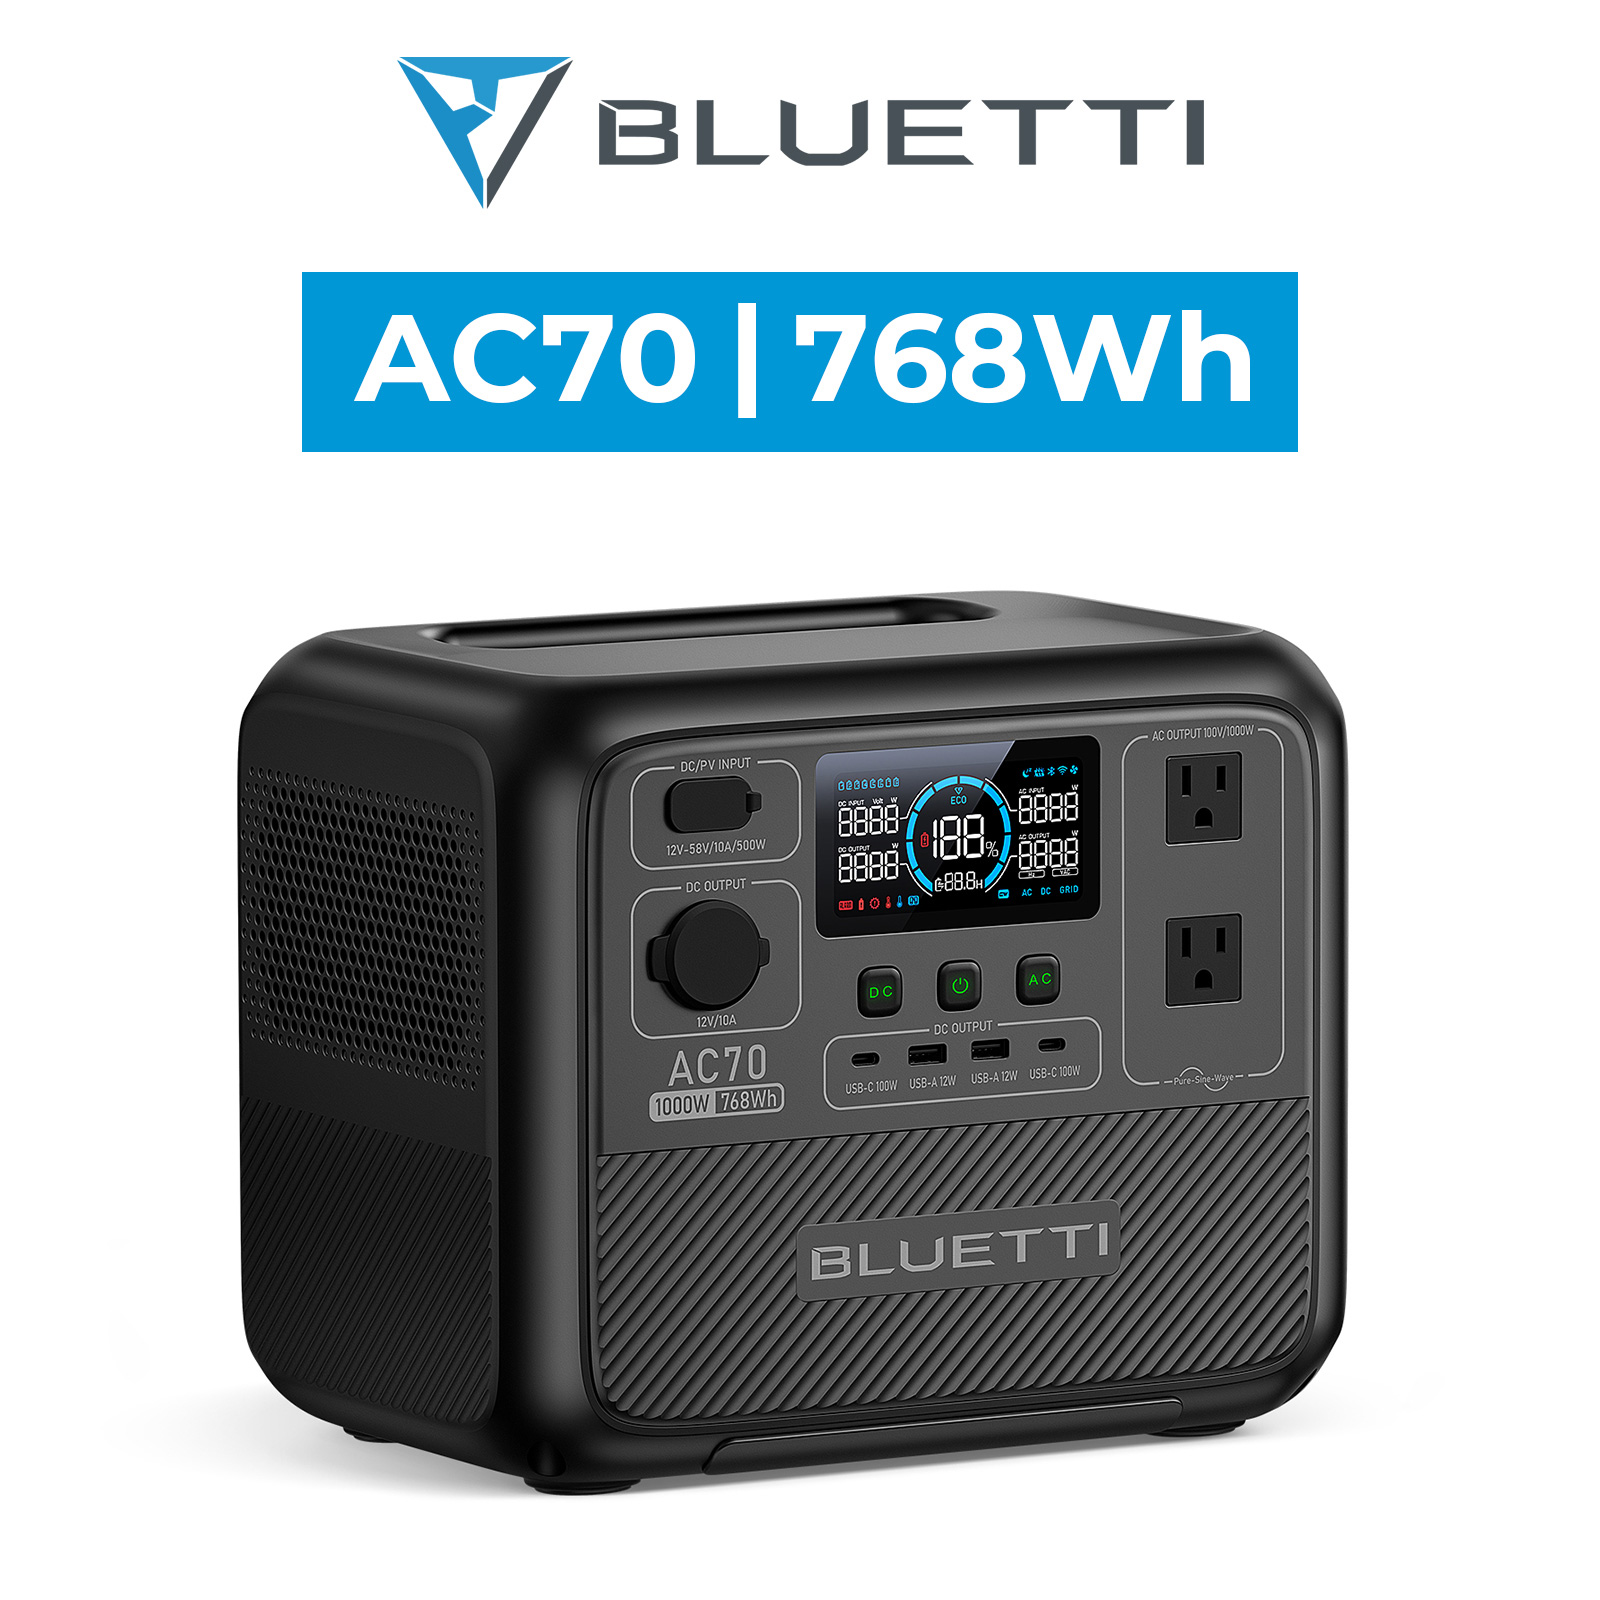 BLUETTI ポータブル電源 AC70 768Wh/1000W 大容量 家庭用 蓄電池 5年